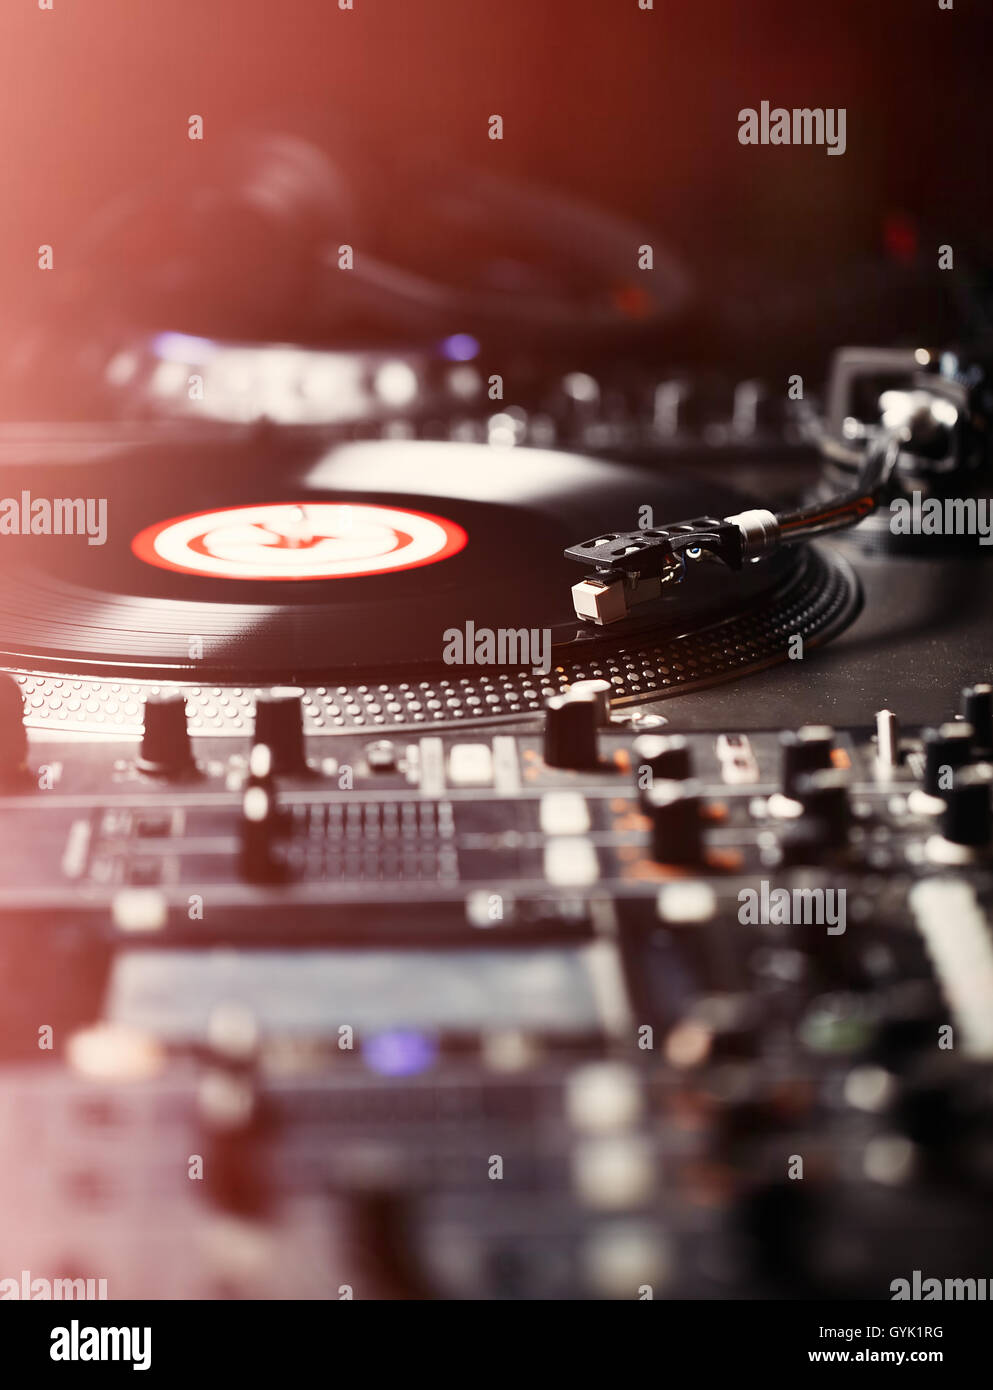 Plattenspieler Vinyl-Plattenspieler, analoge Tontechnik für DJ analoger und digitaler Musik. Großaufnahme, Makro Ausrüstung für professionelle Studio, Konzert, Event. Stockfoto